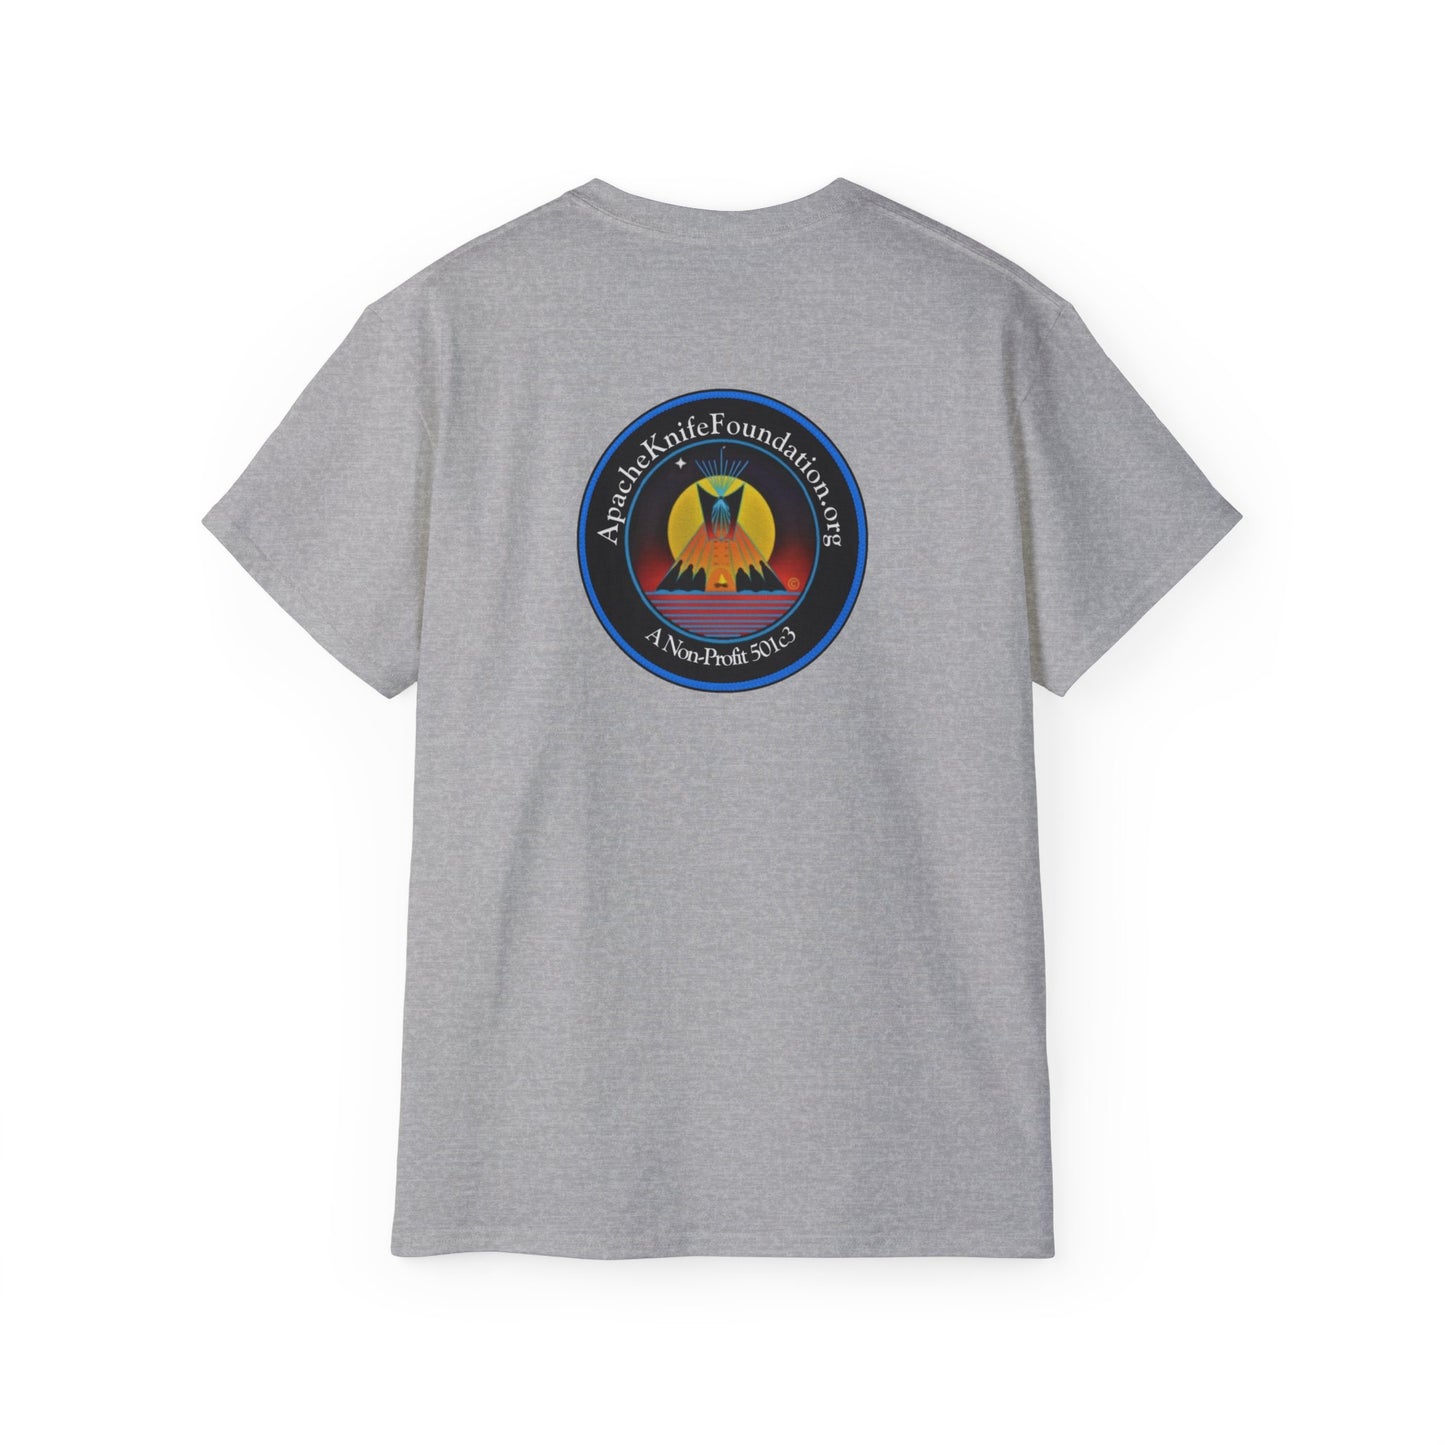 Camisa Apache Knife Foundation, organização sem fins lucrativos, nativa americana (pedido especial)